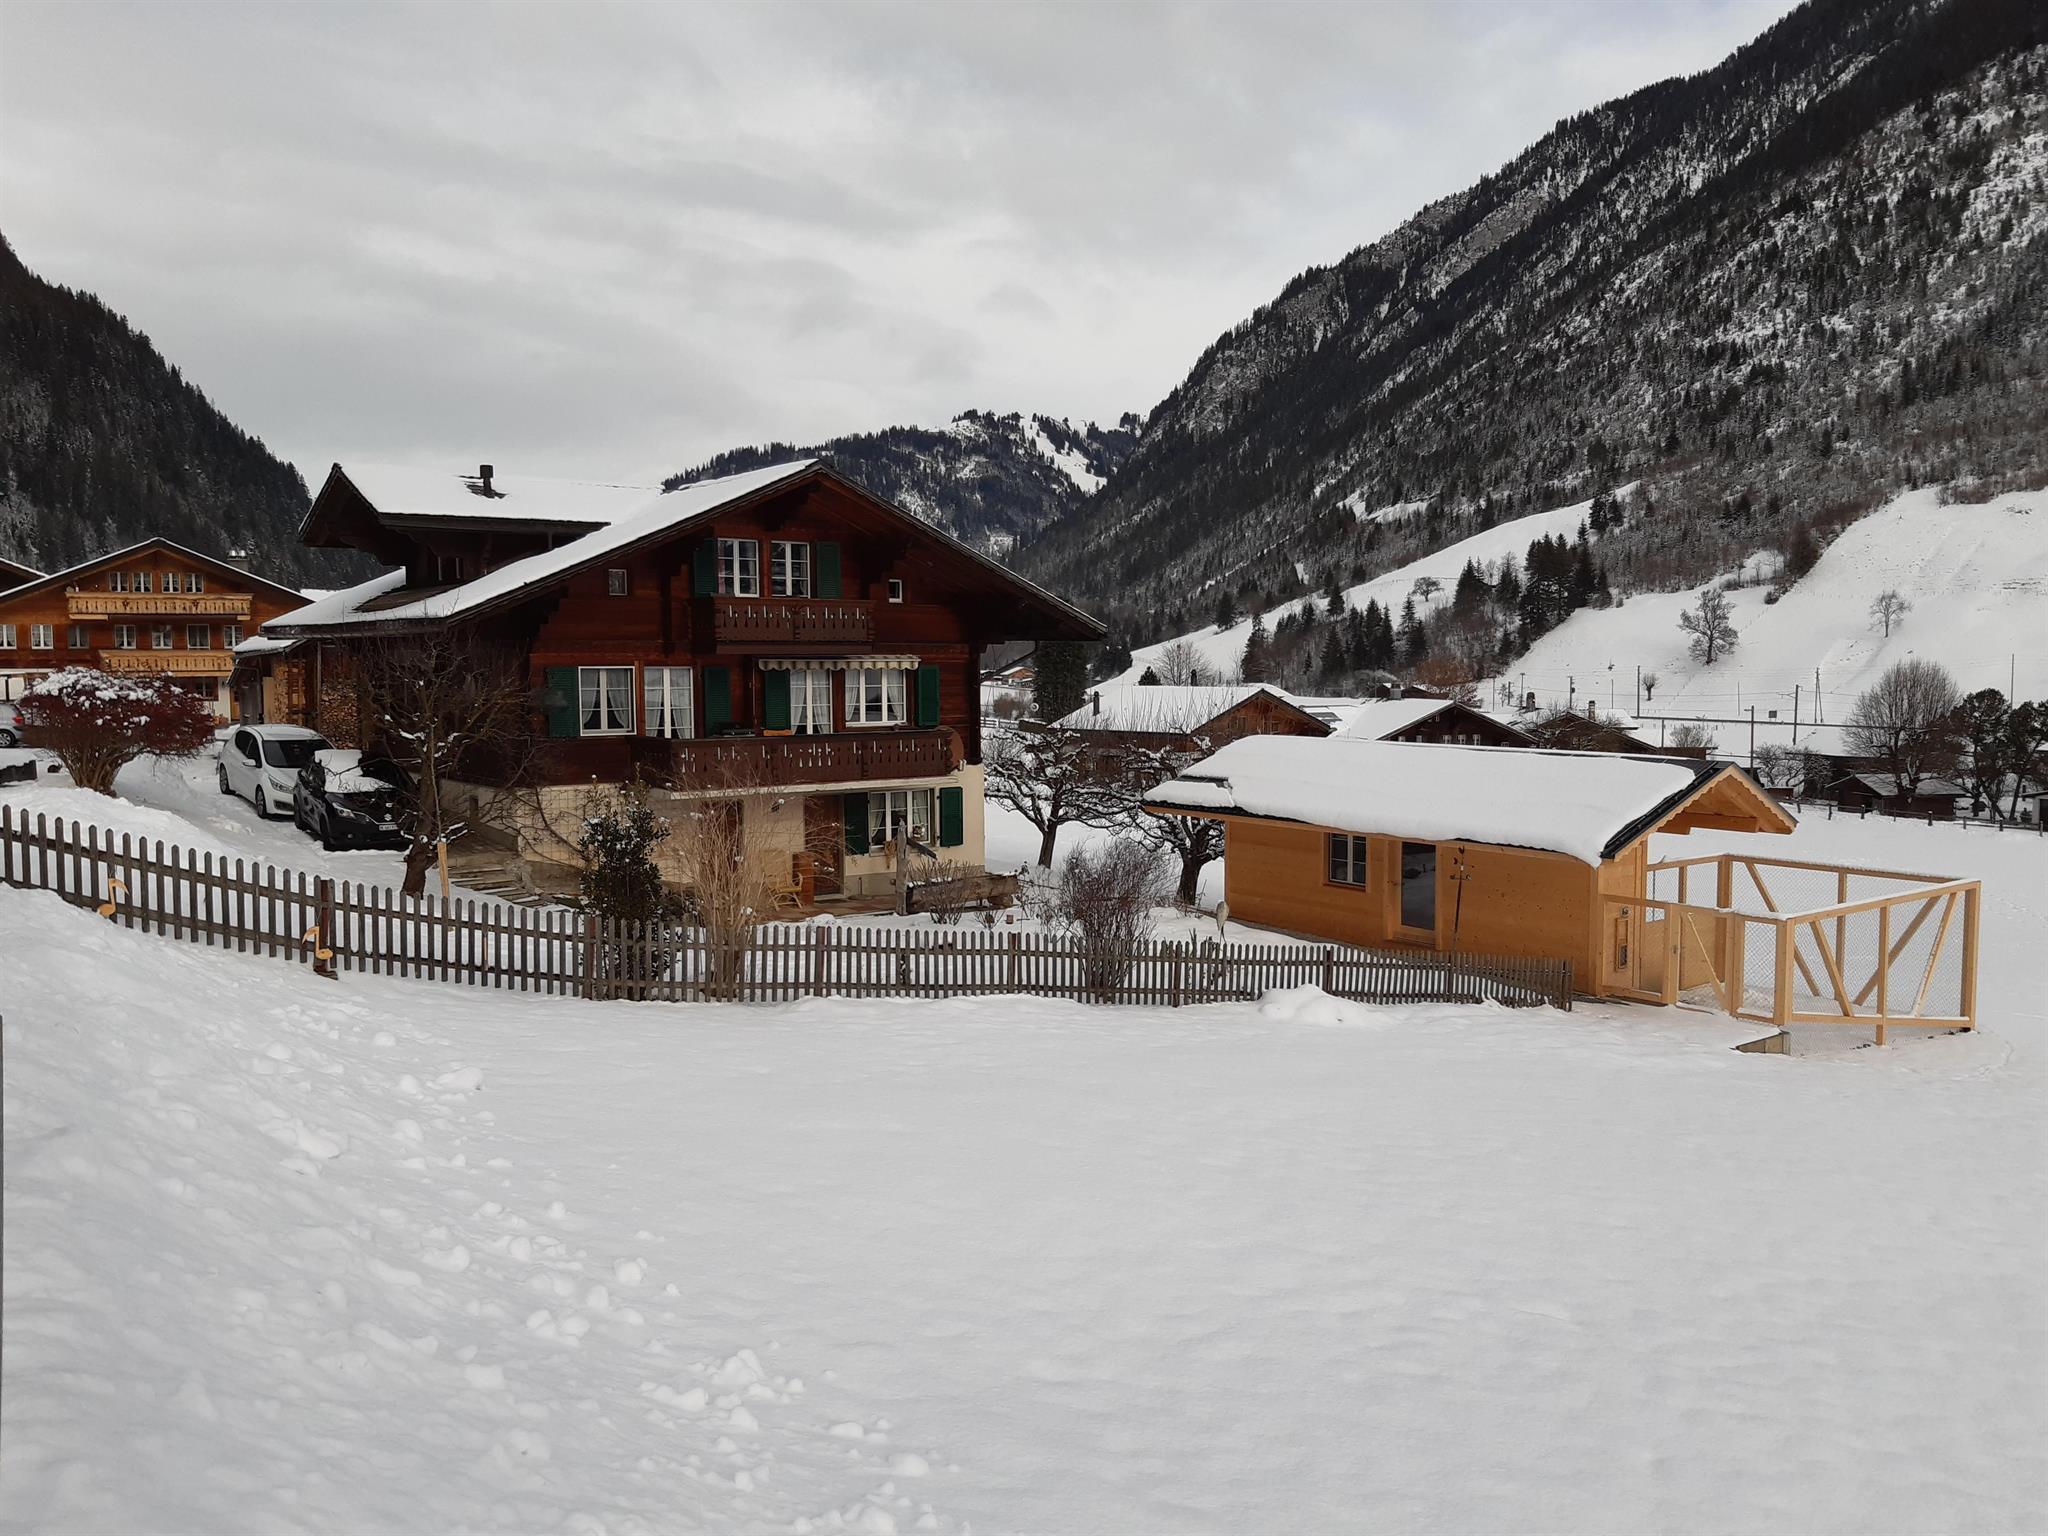 Kirchgasse 12 2-Bettwohnung Ferienwohnung in der Schweiz